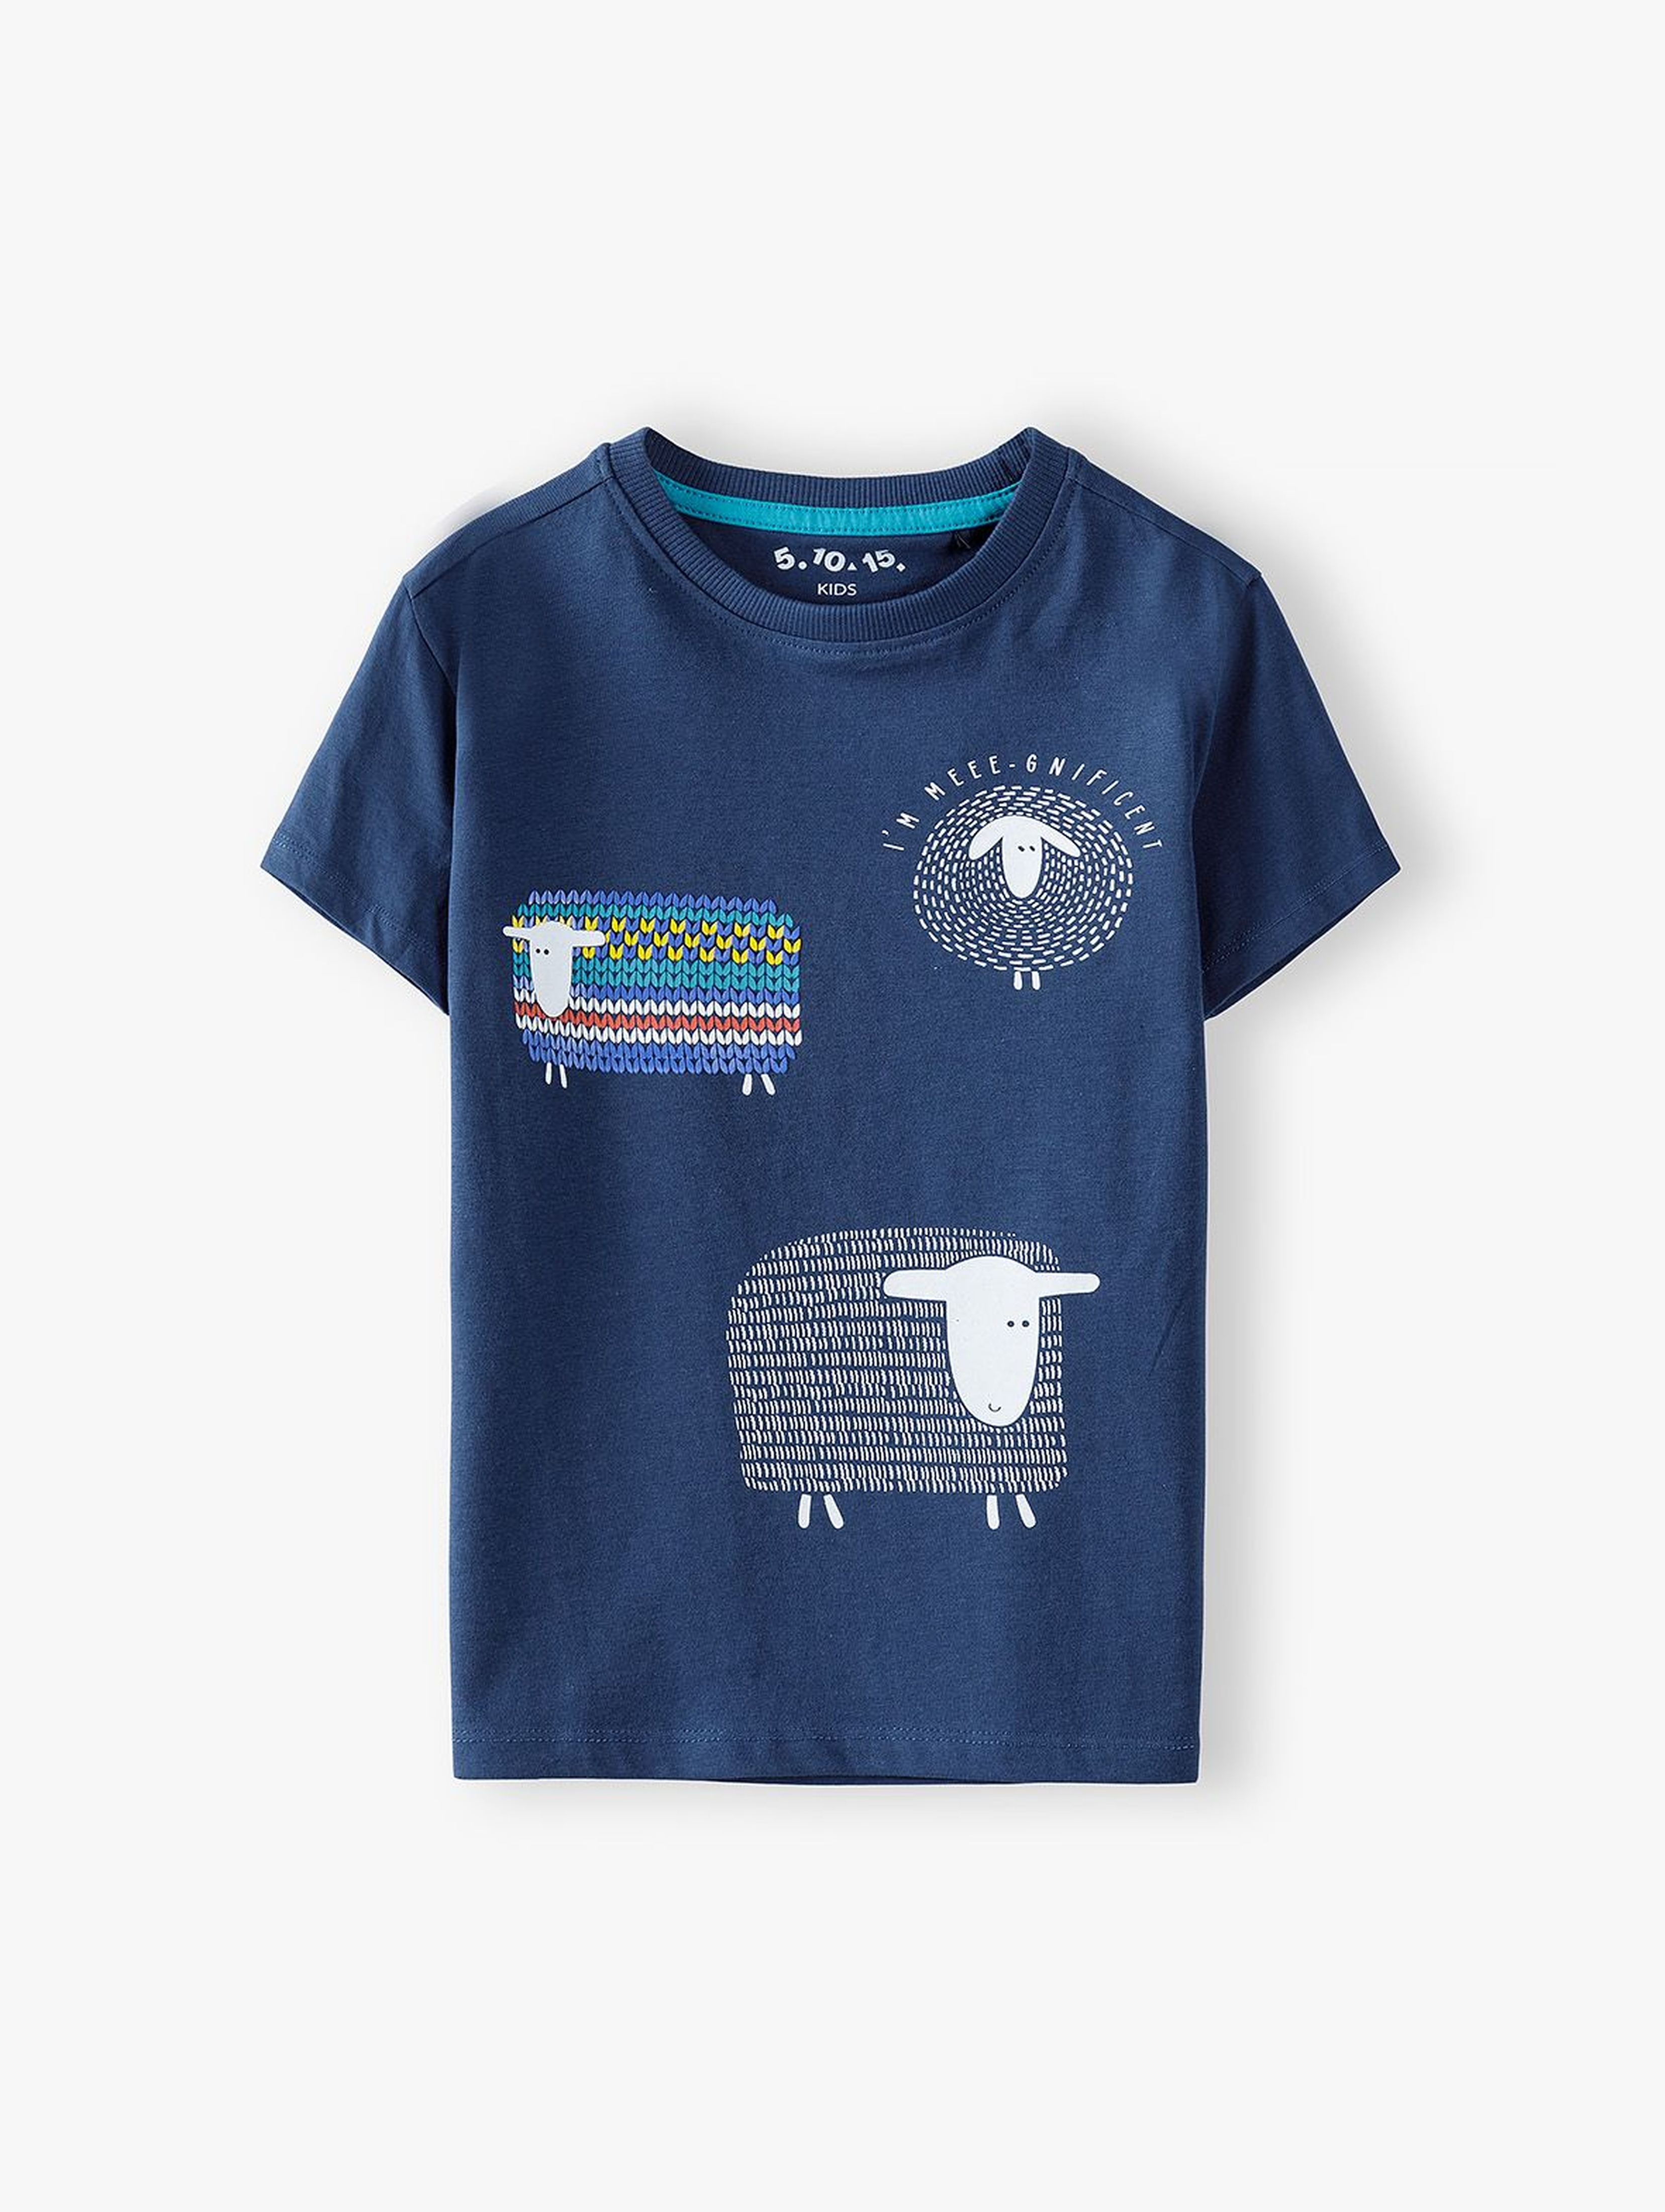 T-shirt chłopięcy granatowy w owce